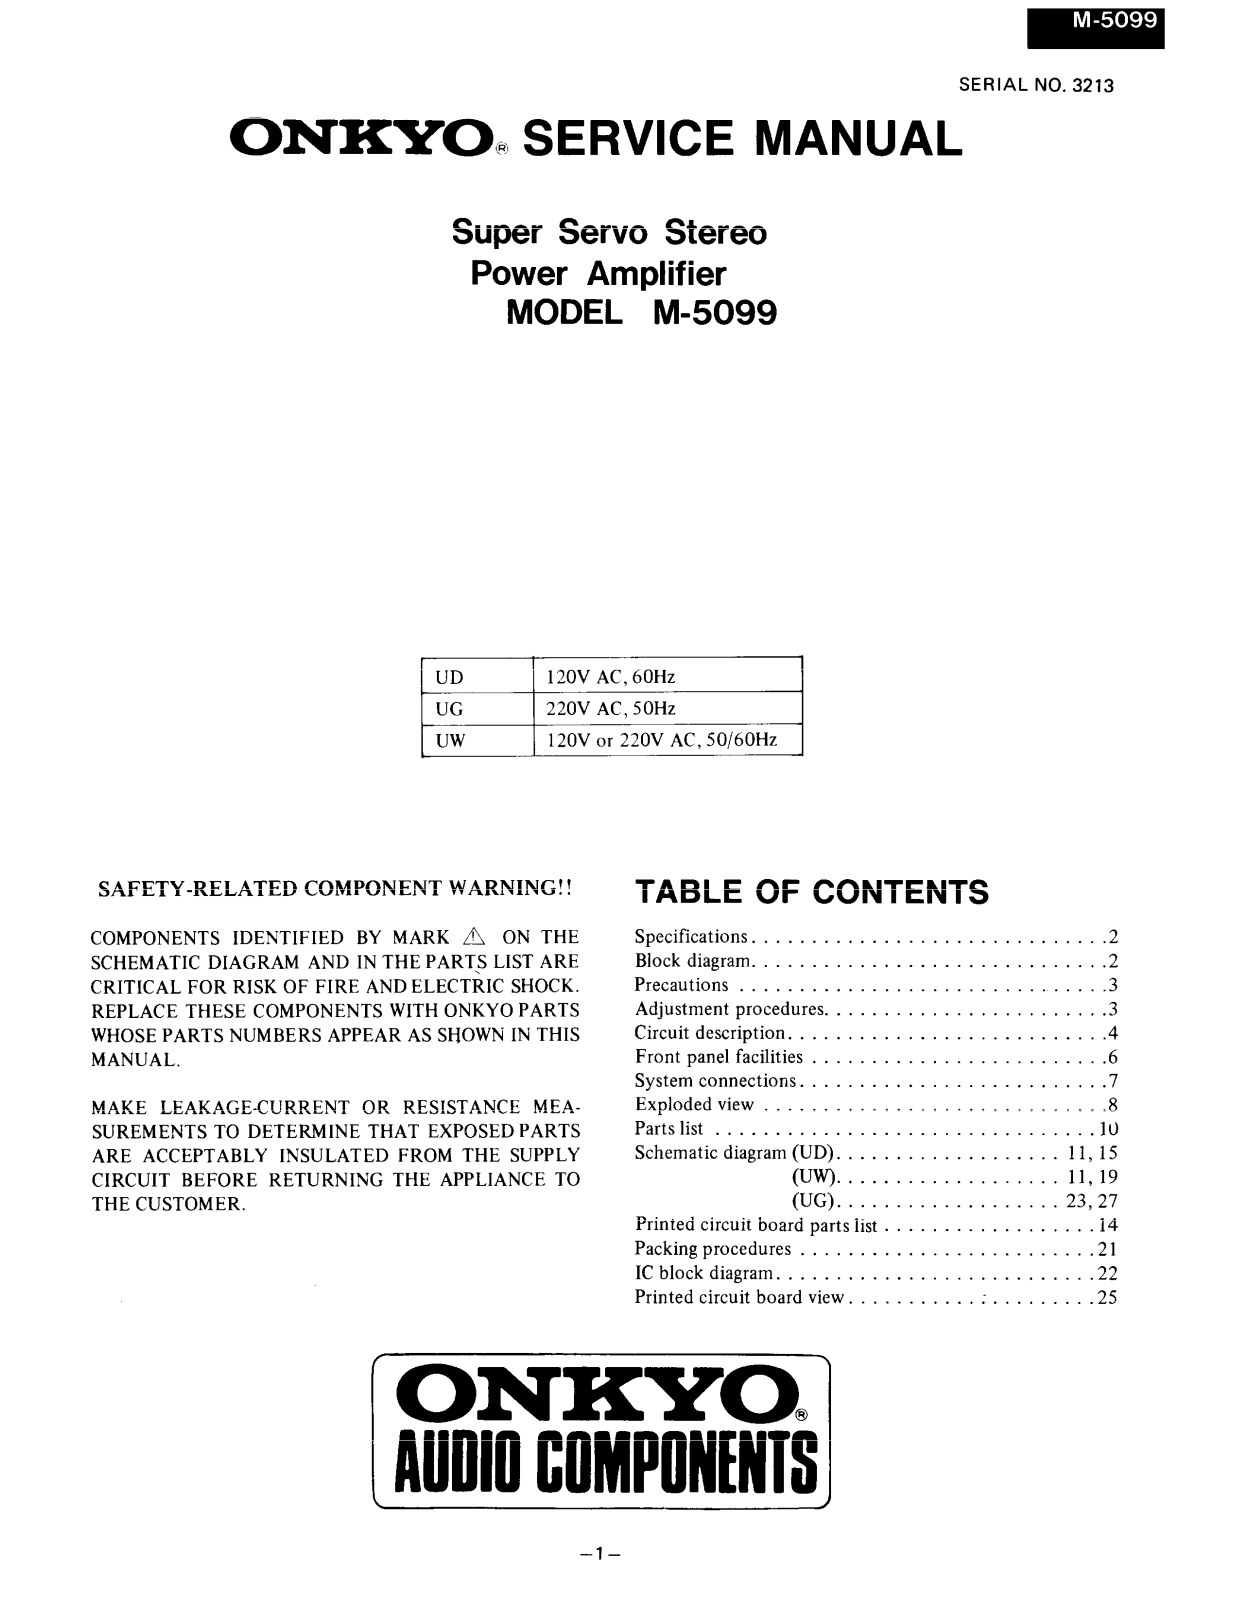 Onkyo M-5099 Service manual